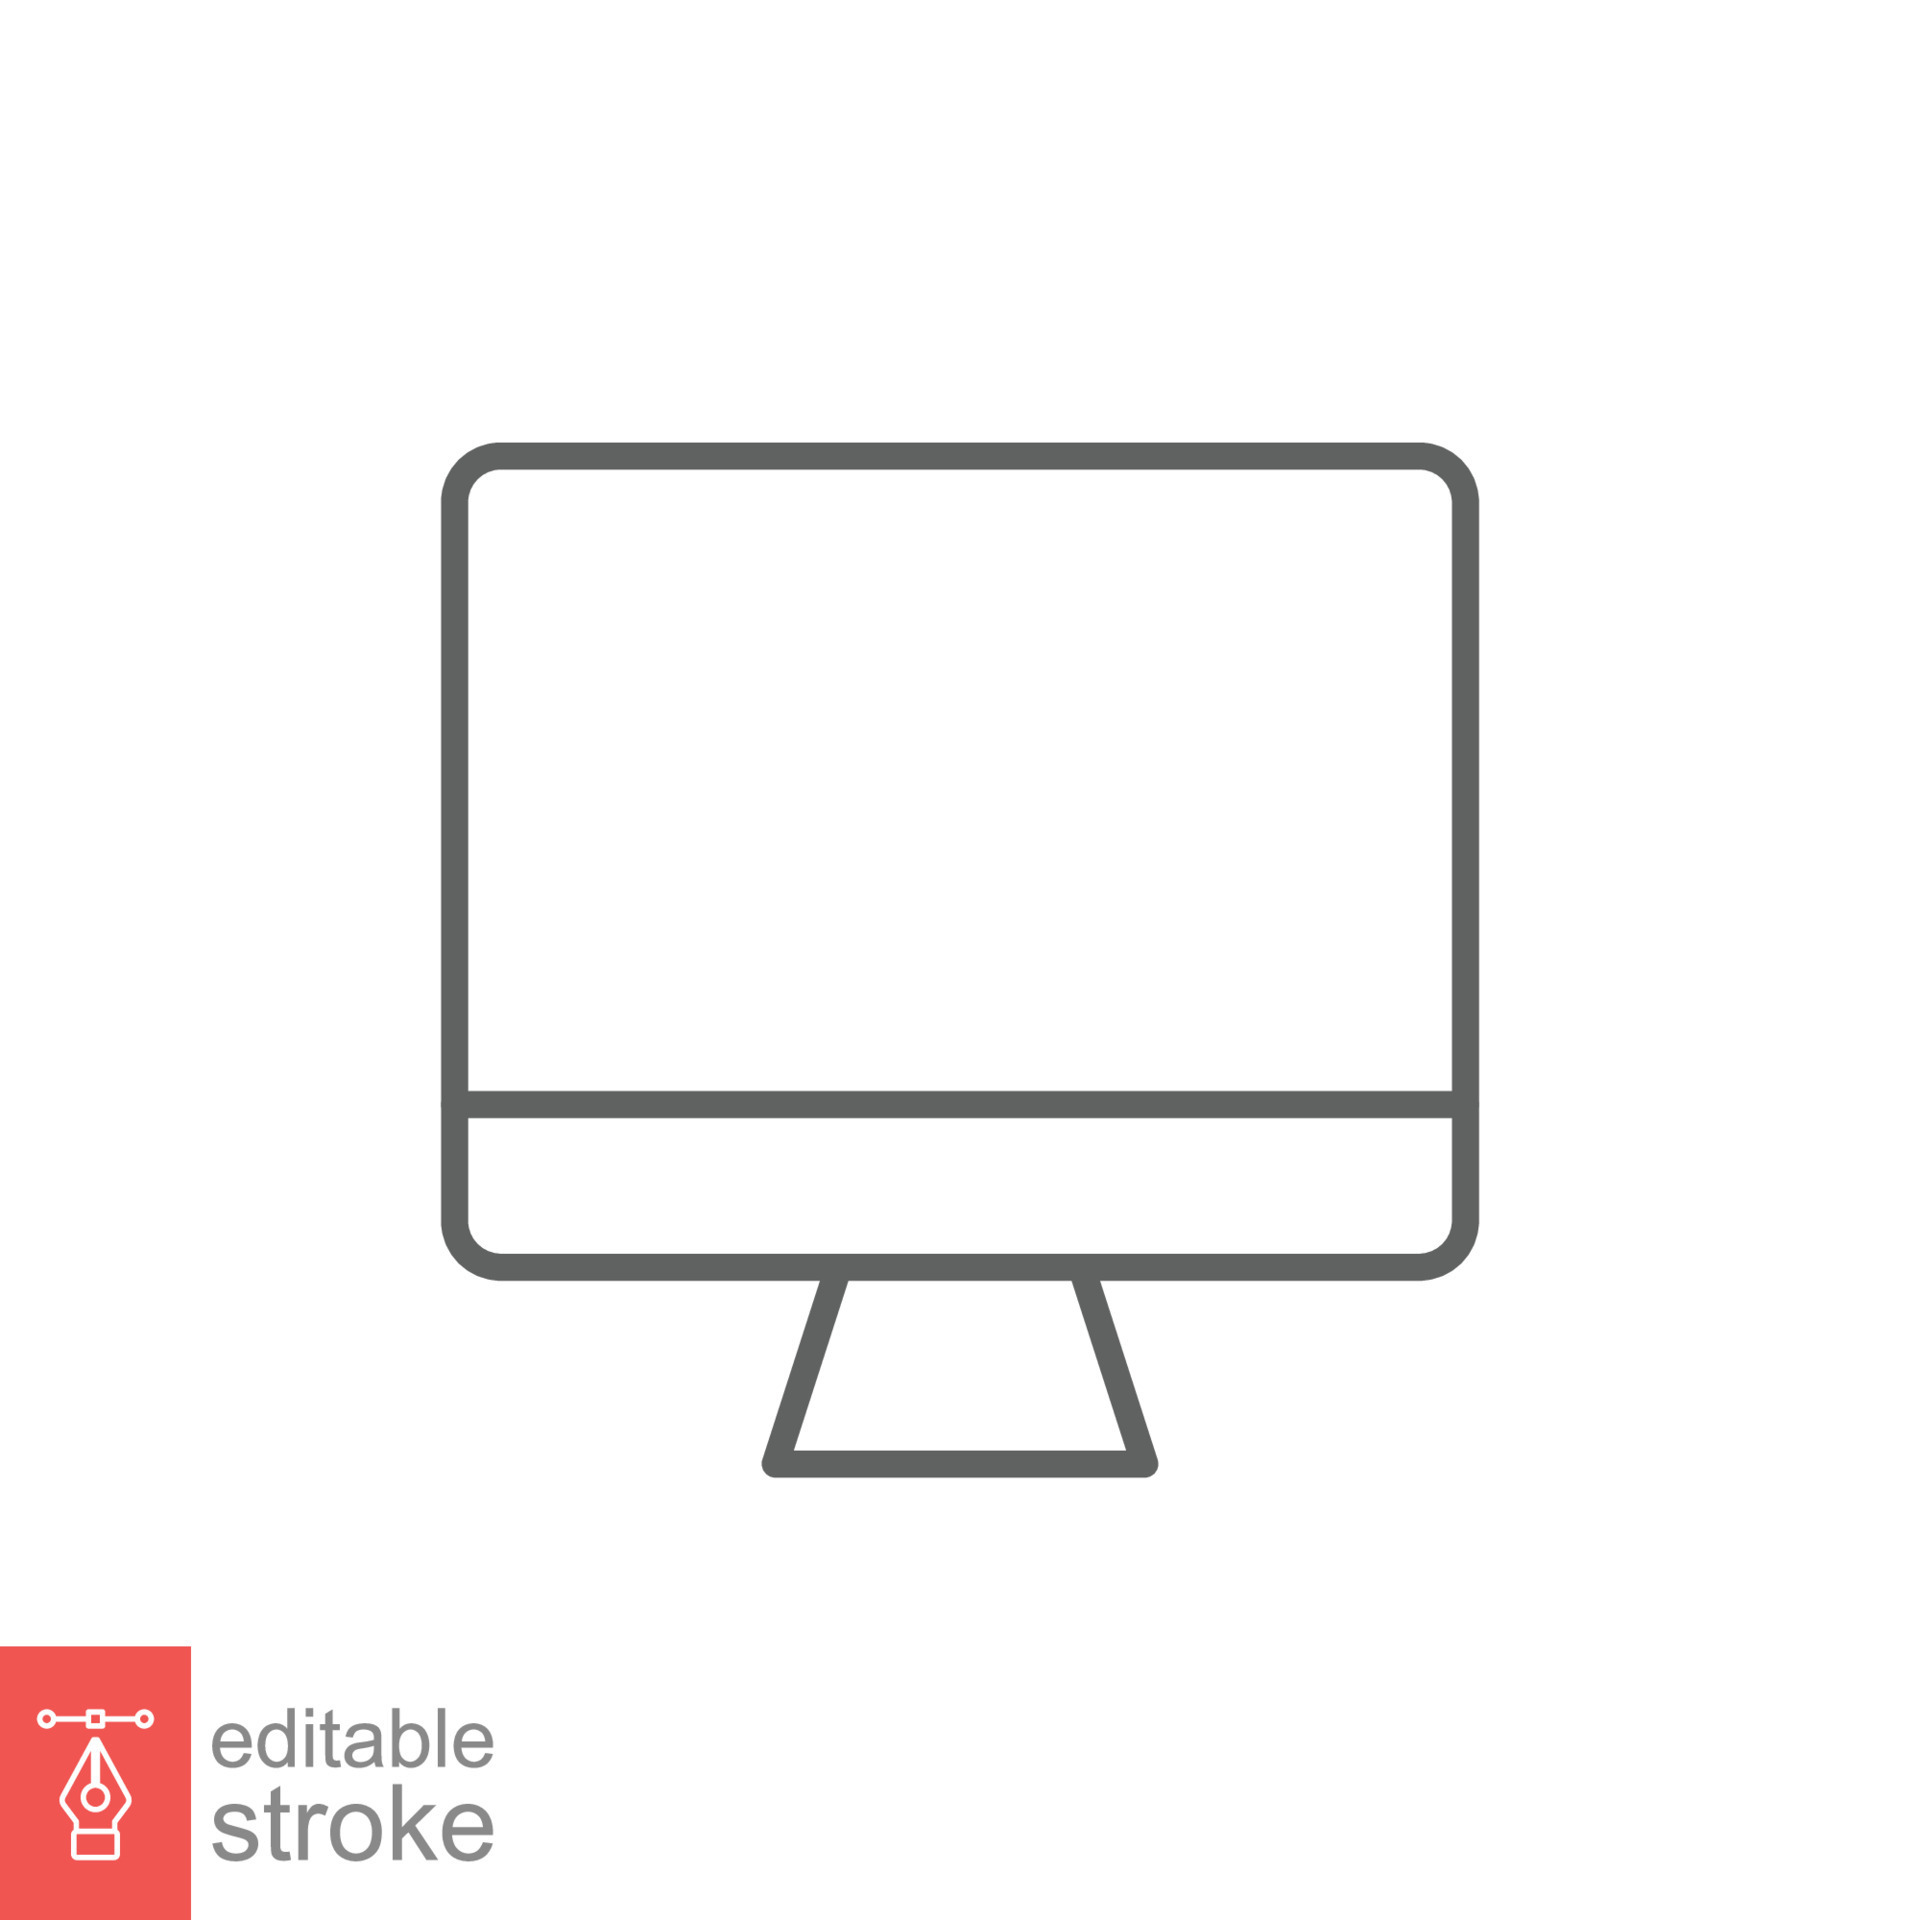 Với biểu tượng đơn giản tinh tế của Monitor line icon này, bạn có thể dễ dàng thể hiện được đẳng cấp của mình chỉ trong một tấm ảnh! Đem đến cho bạn những trải nghiệm thật tuyệt vời trong công việc thiết kế của mình!